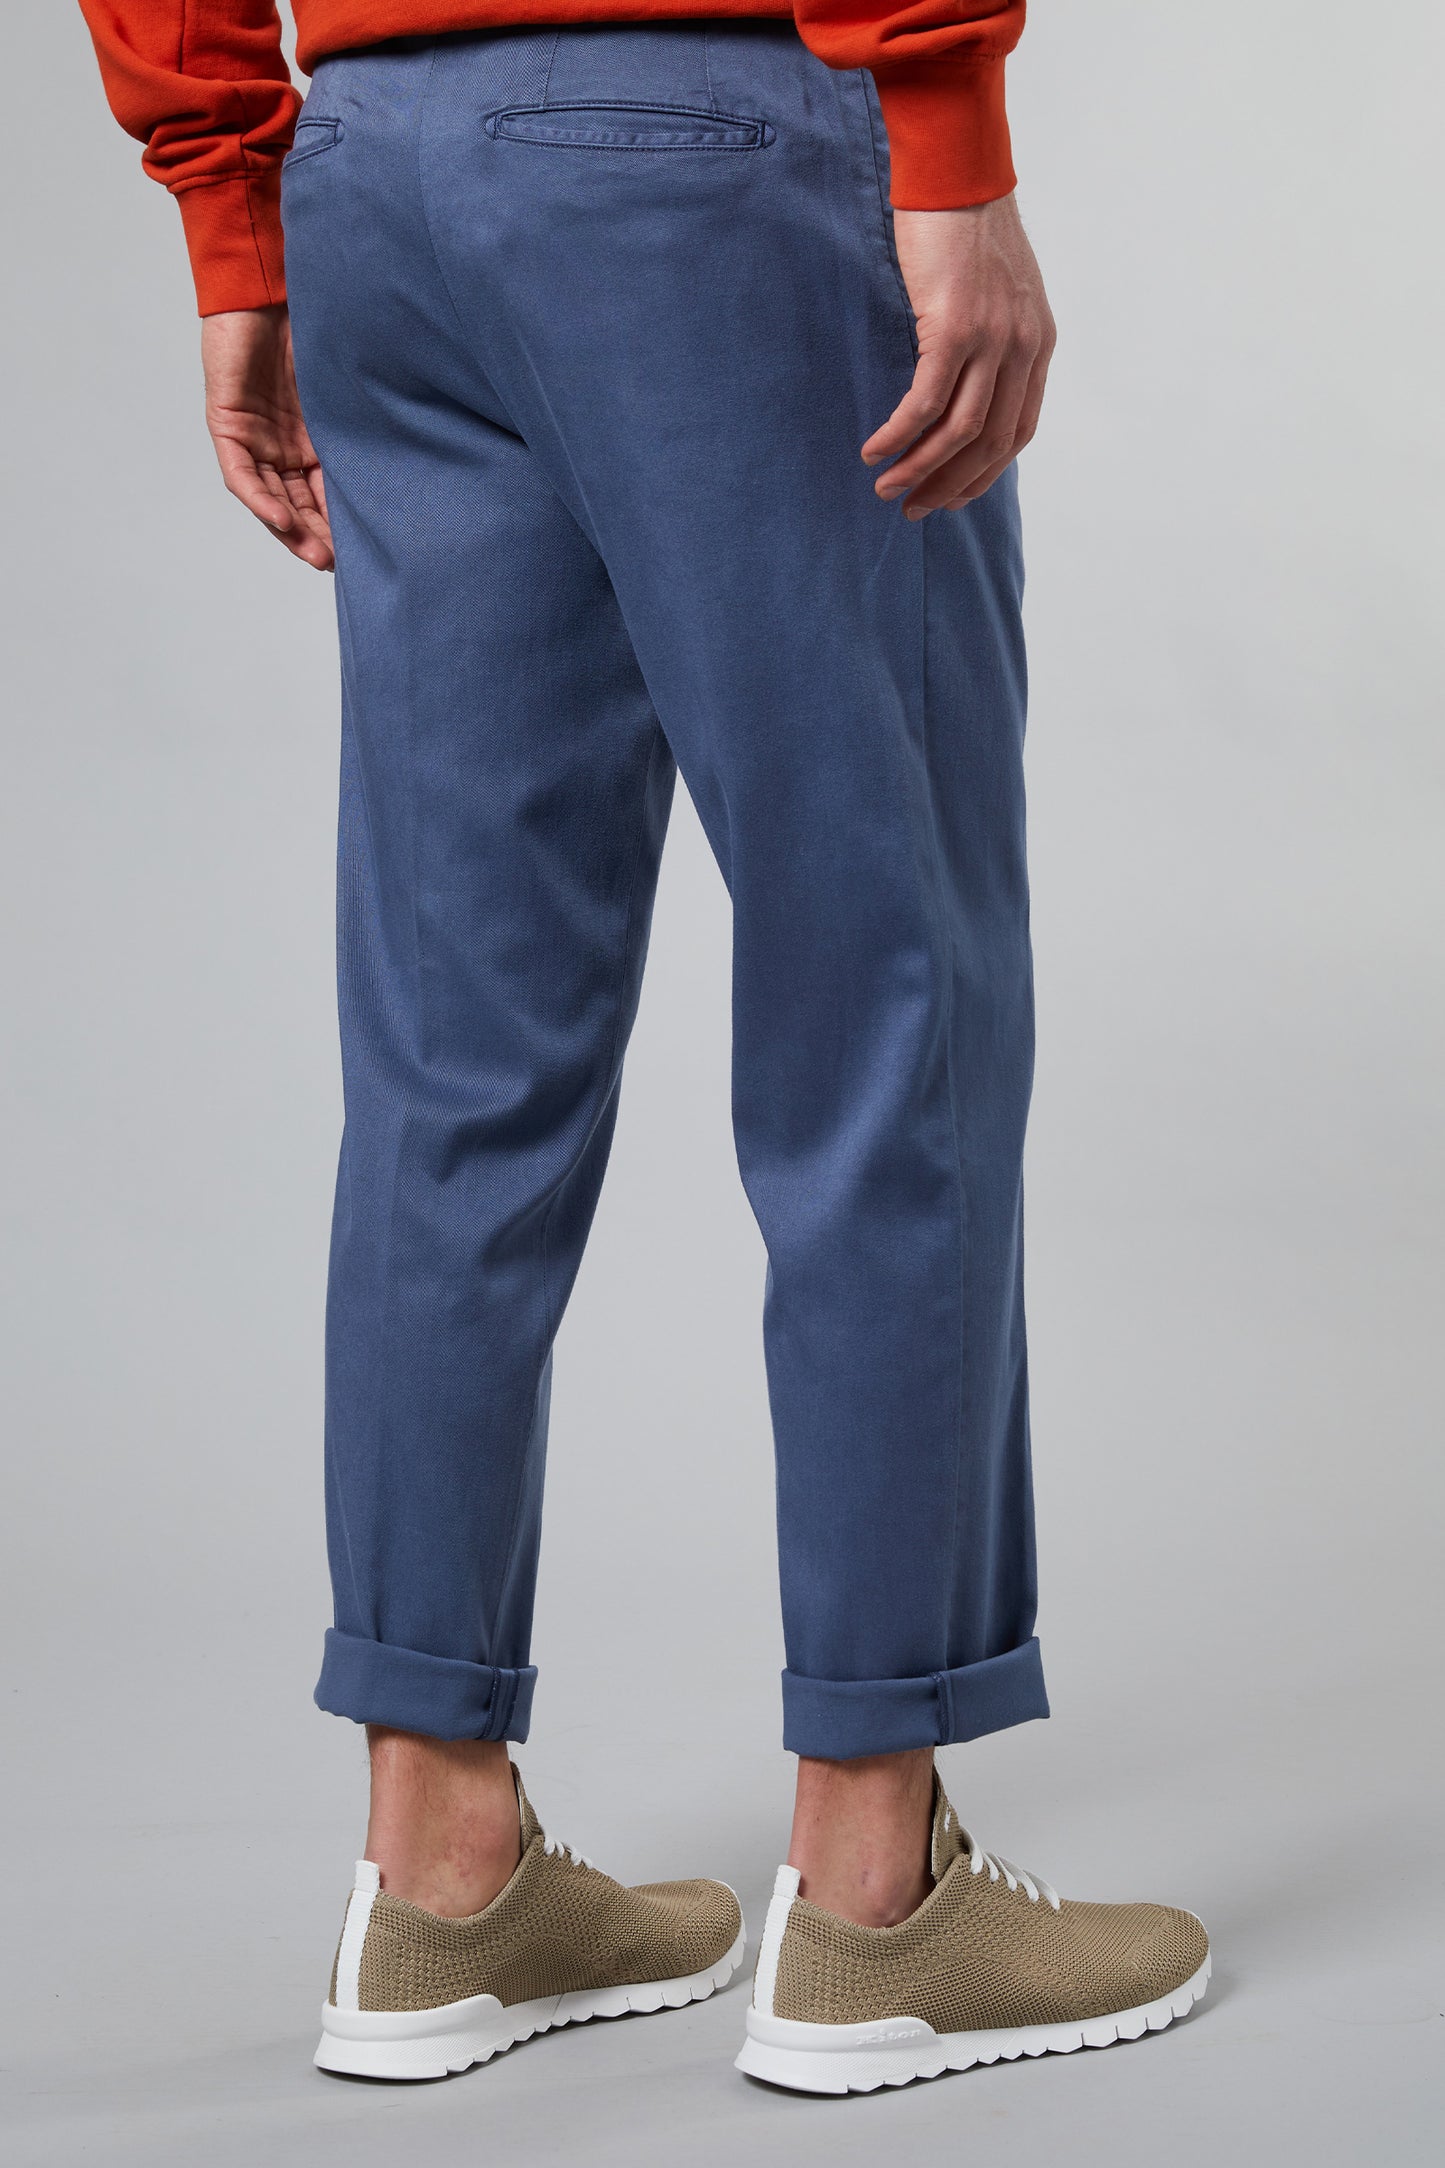  Kiton Pantalone Modello Laccio 1 Pence Con Zip Blu Blu Uomo - 4